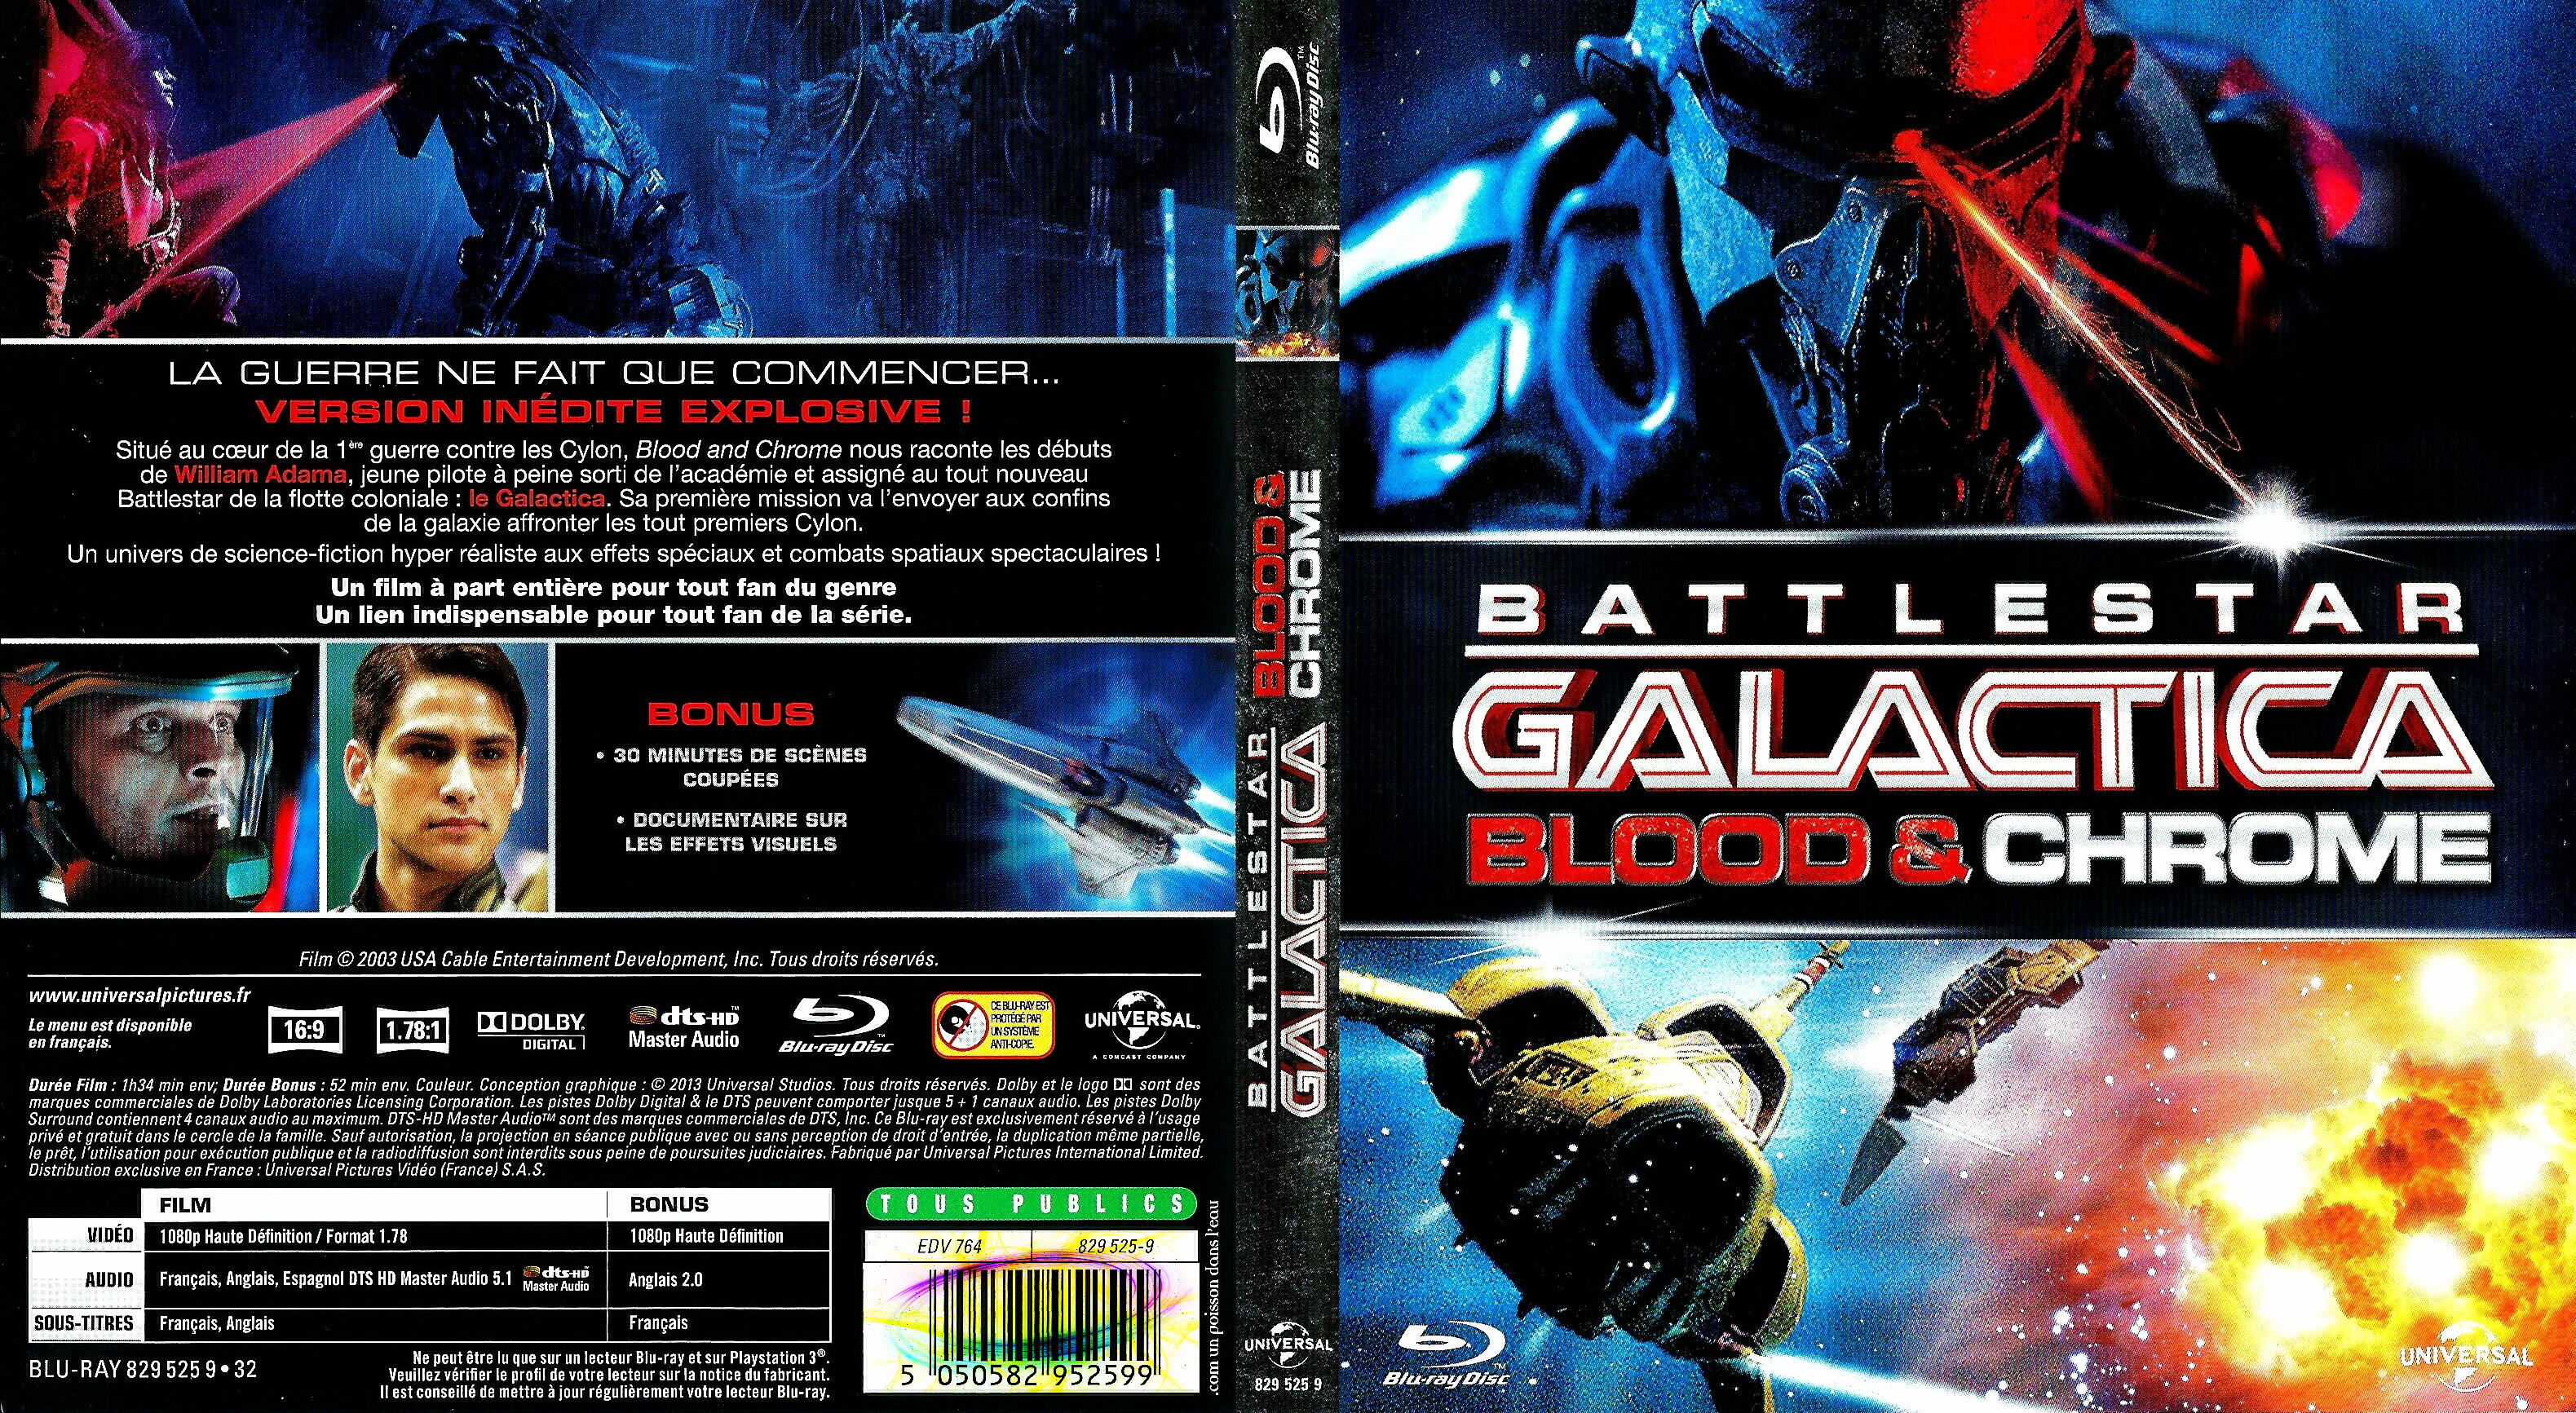 Jaquette DVD Battlestar Galactica blood & chrome (BLU-RAY)